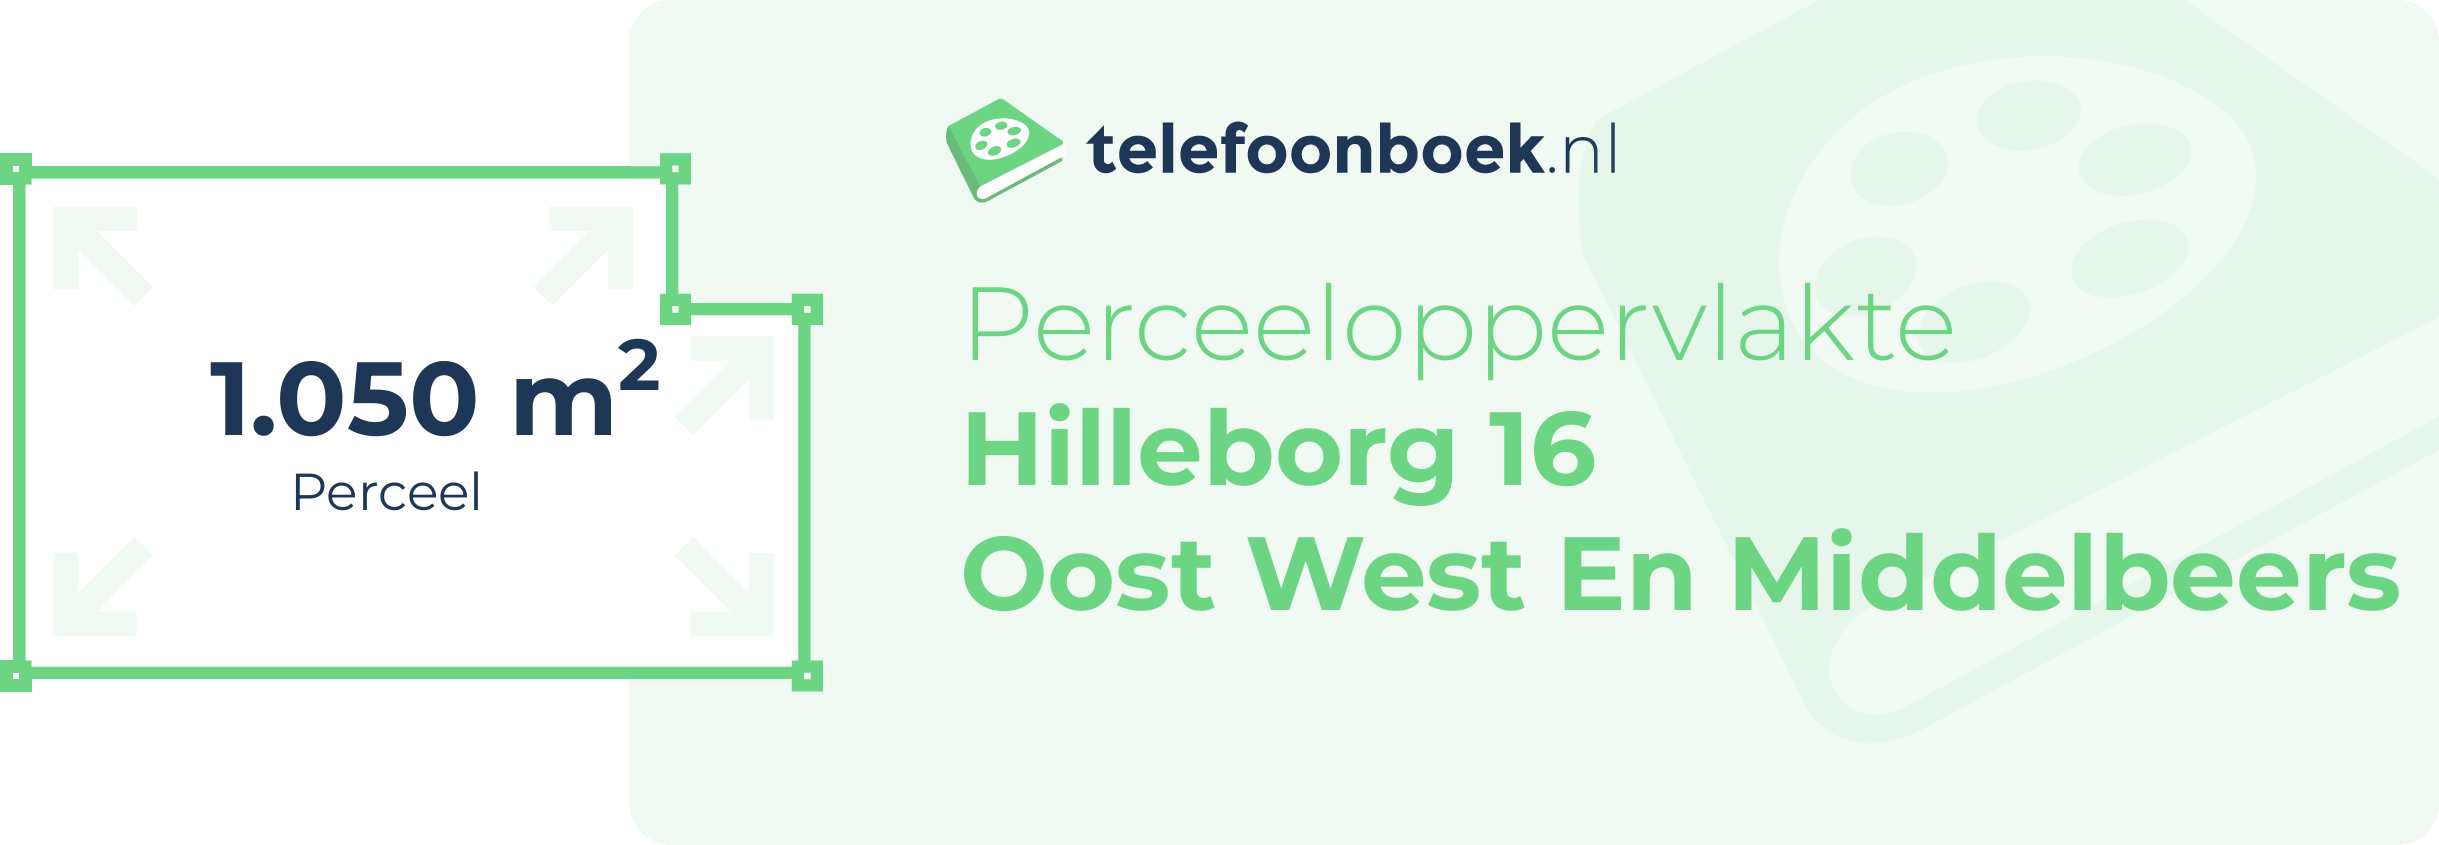 Perceeloppervlakte Hilleborg 16 Oost West En Middelbeers